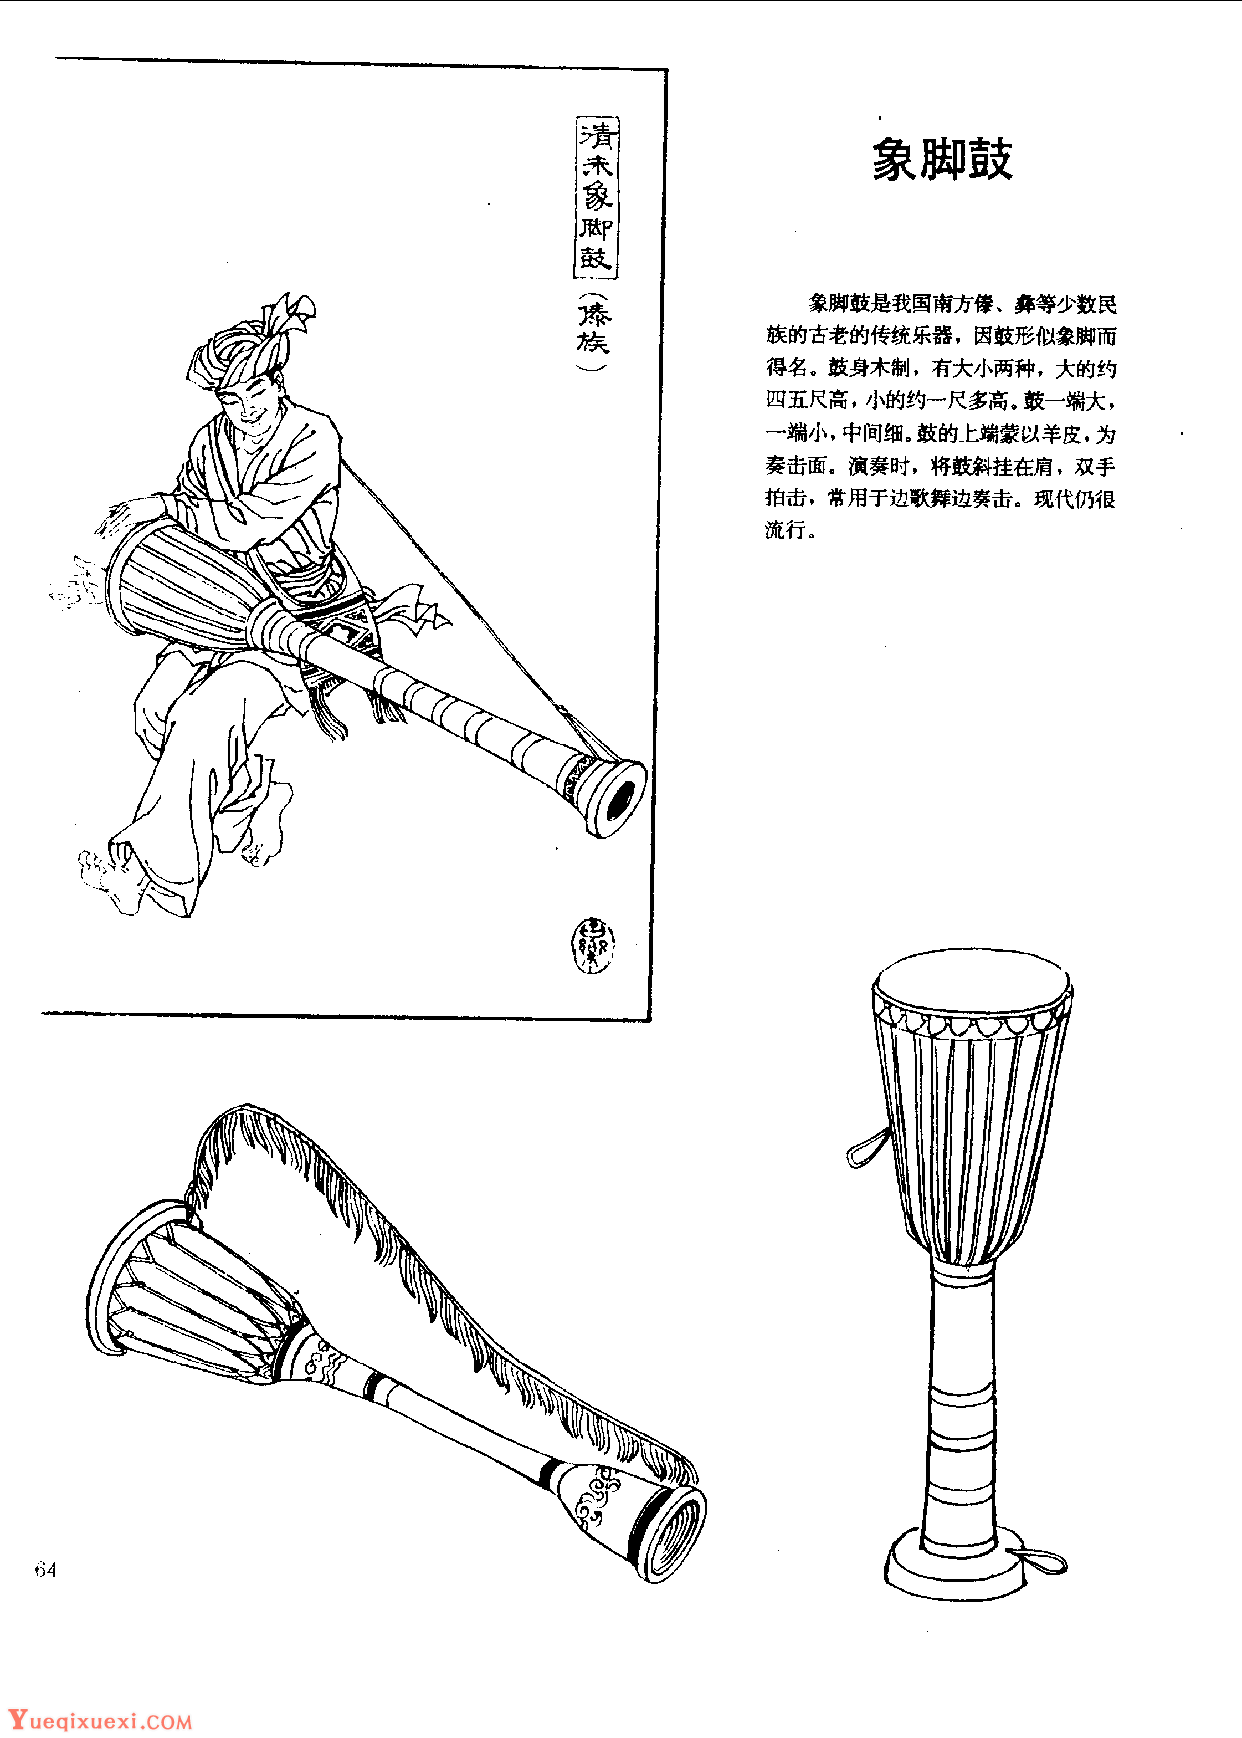 中国古代乐器《象脚鼓》